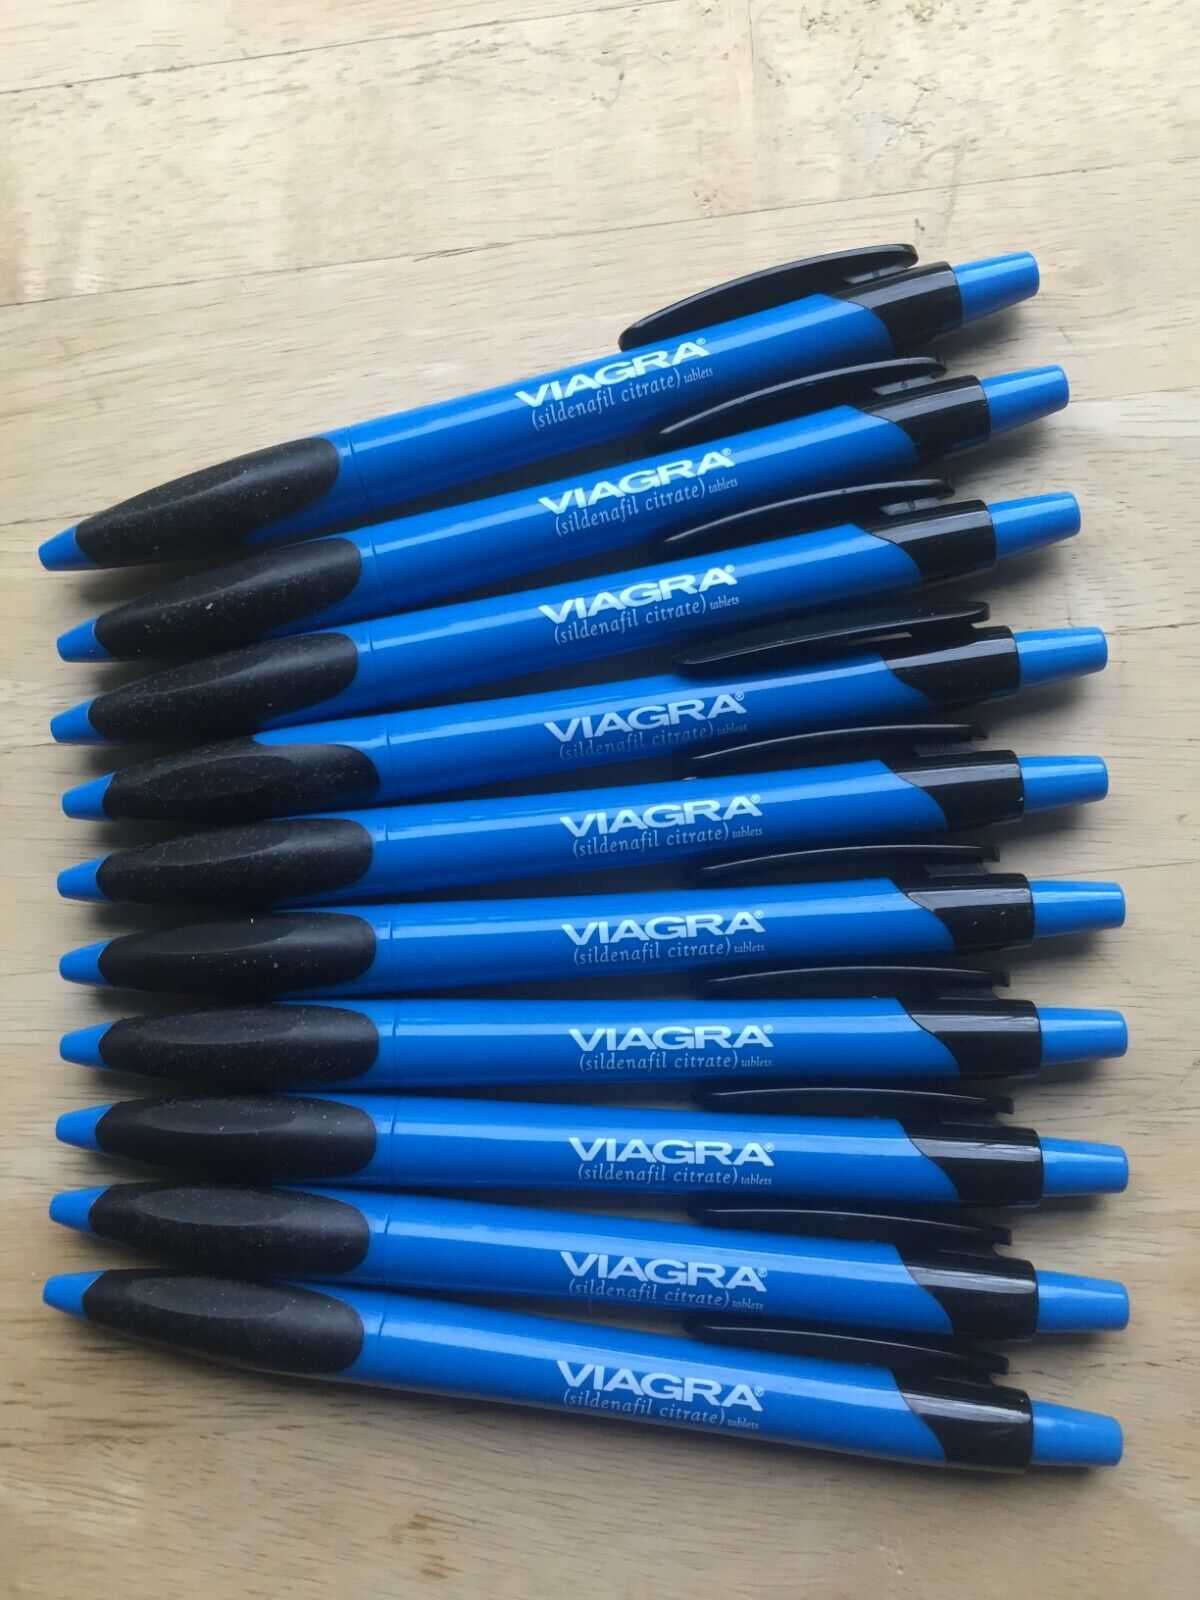 10 VIAGRA Drug Rep Click Pens Brilliant Blue - COLLECTIBLE VINTAGE